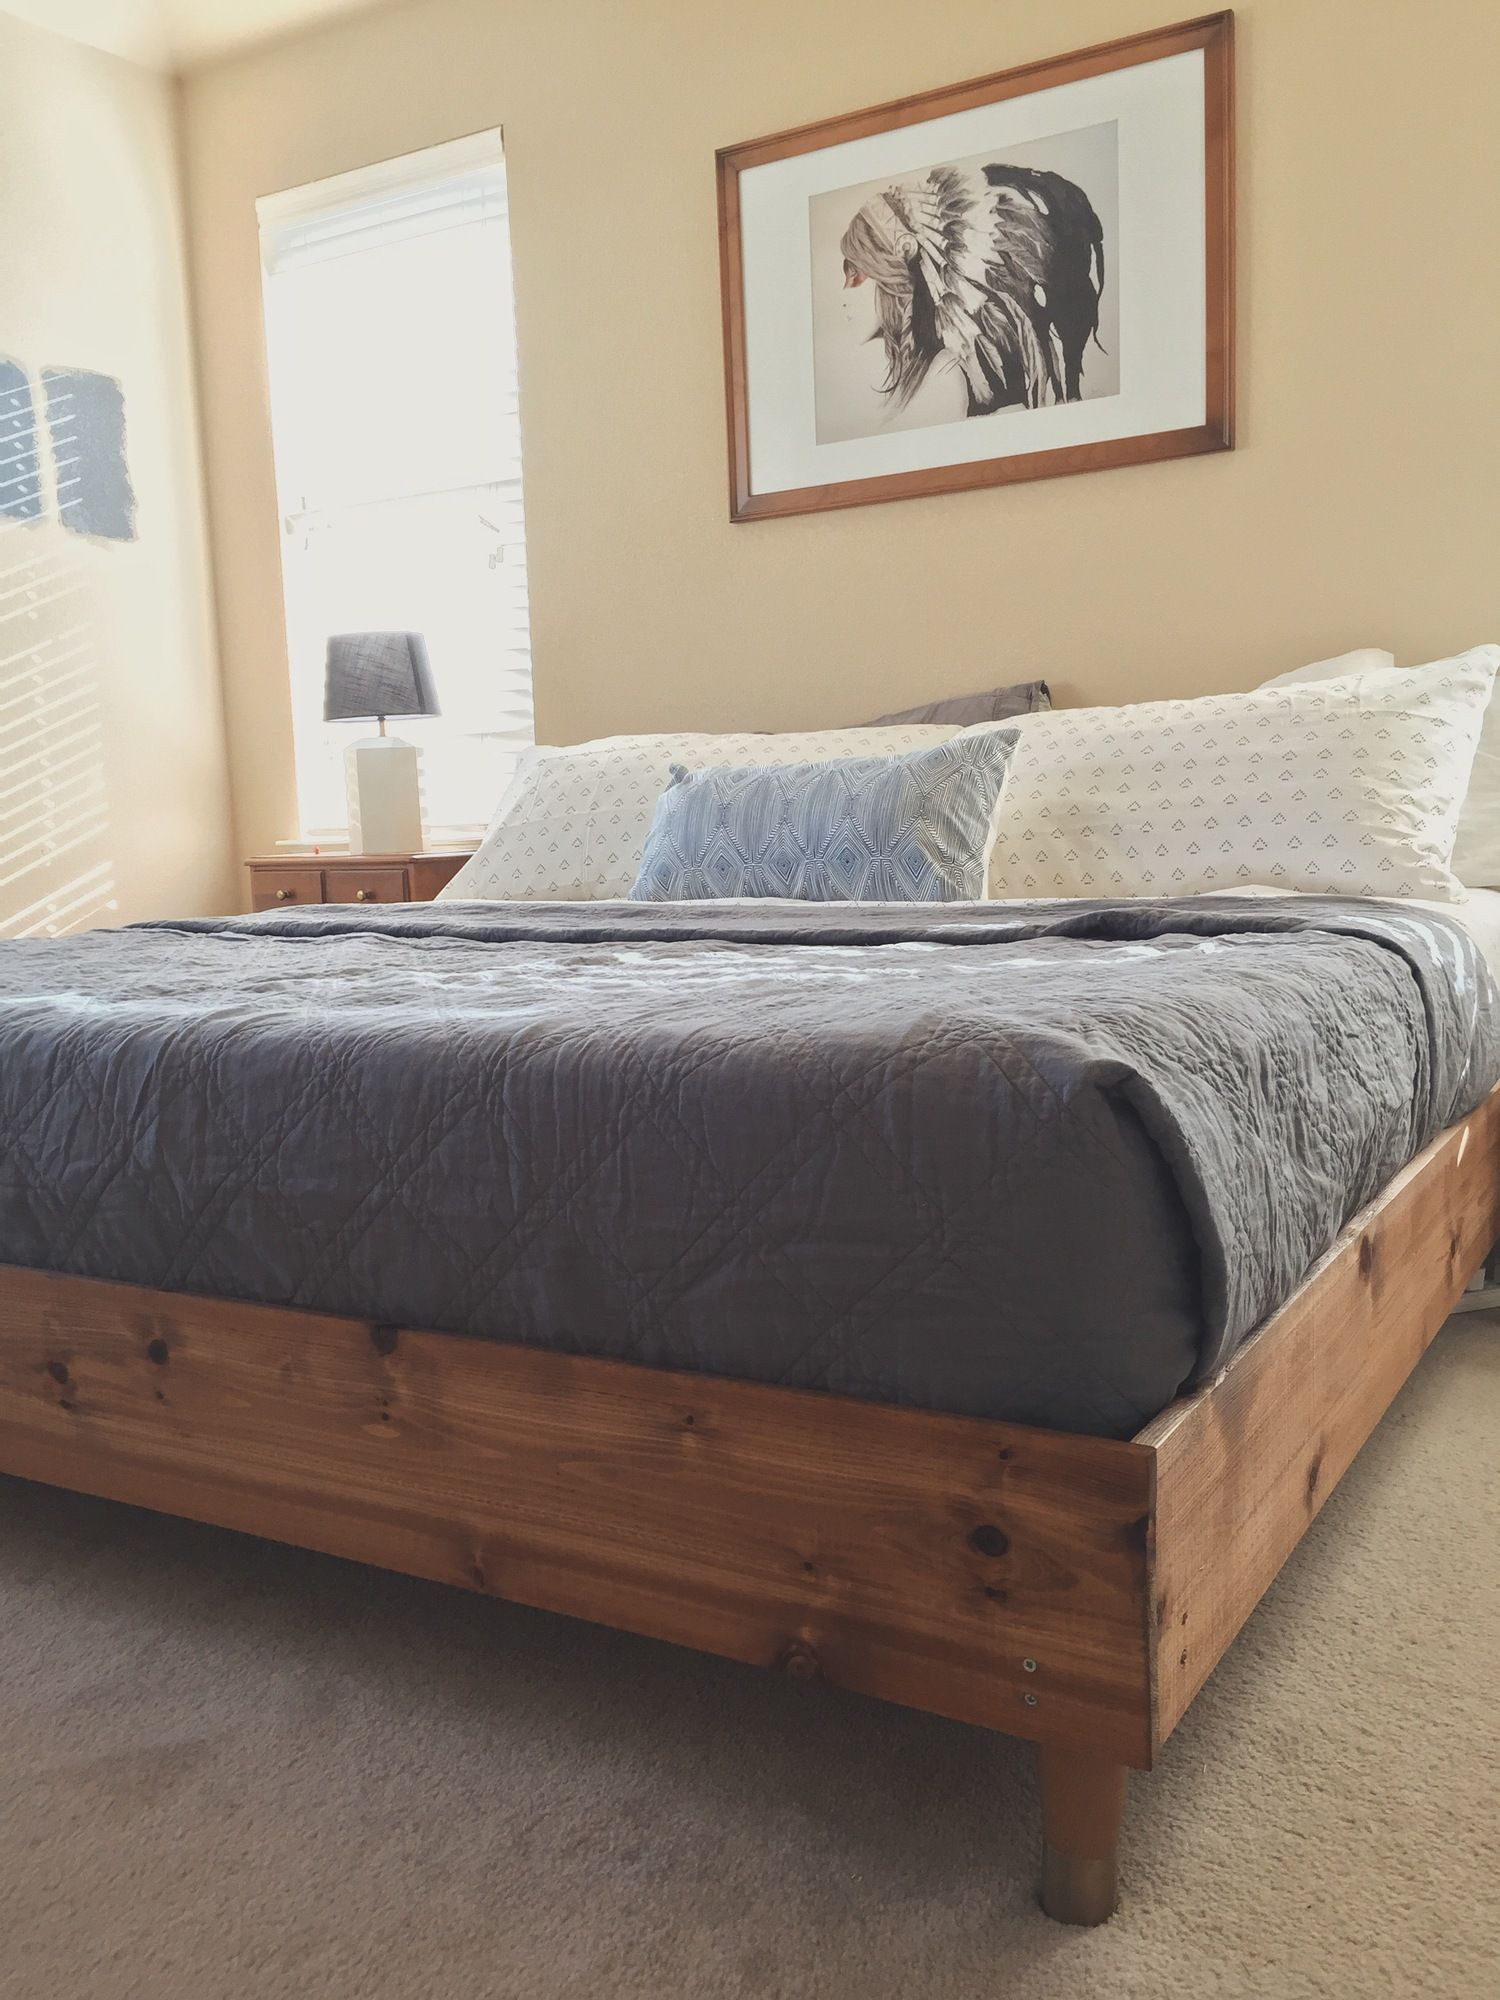 DIY King Size Bed Frame Plans
 Bedroom Update King Bed DIY Wood Stuff